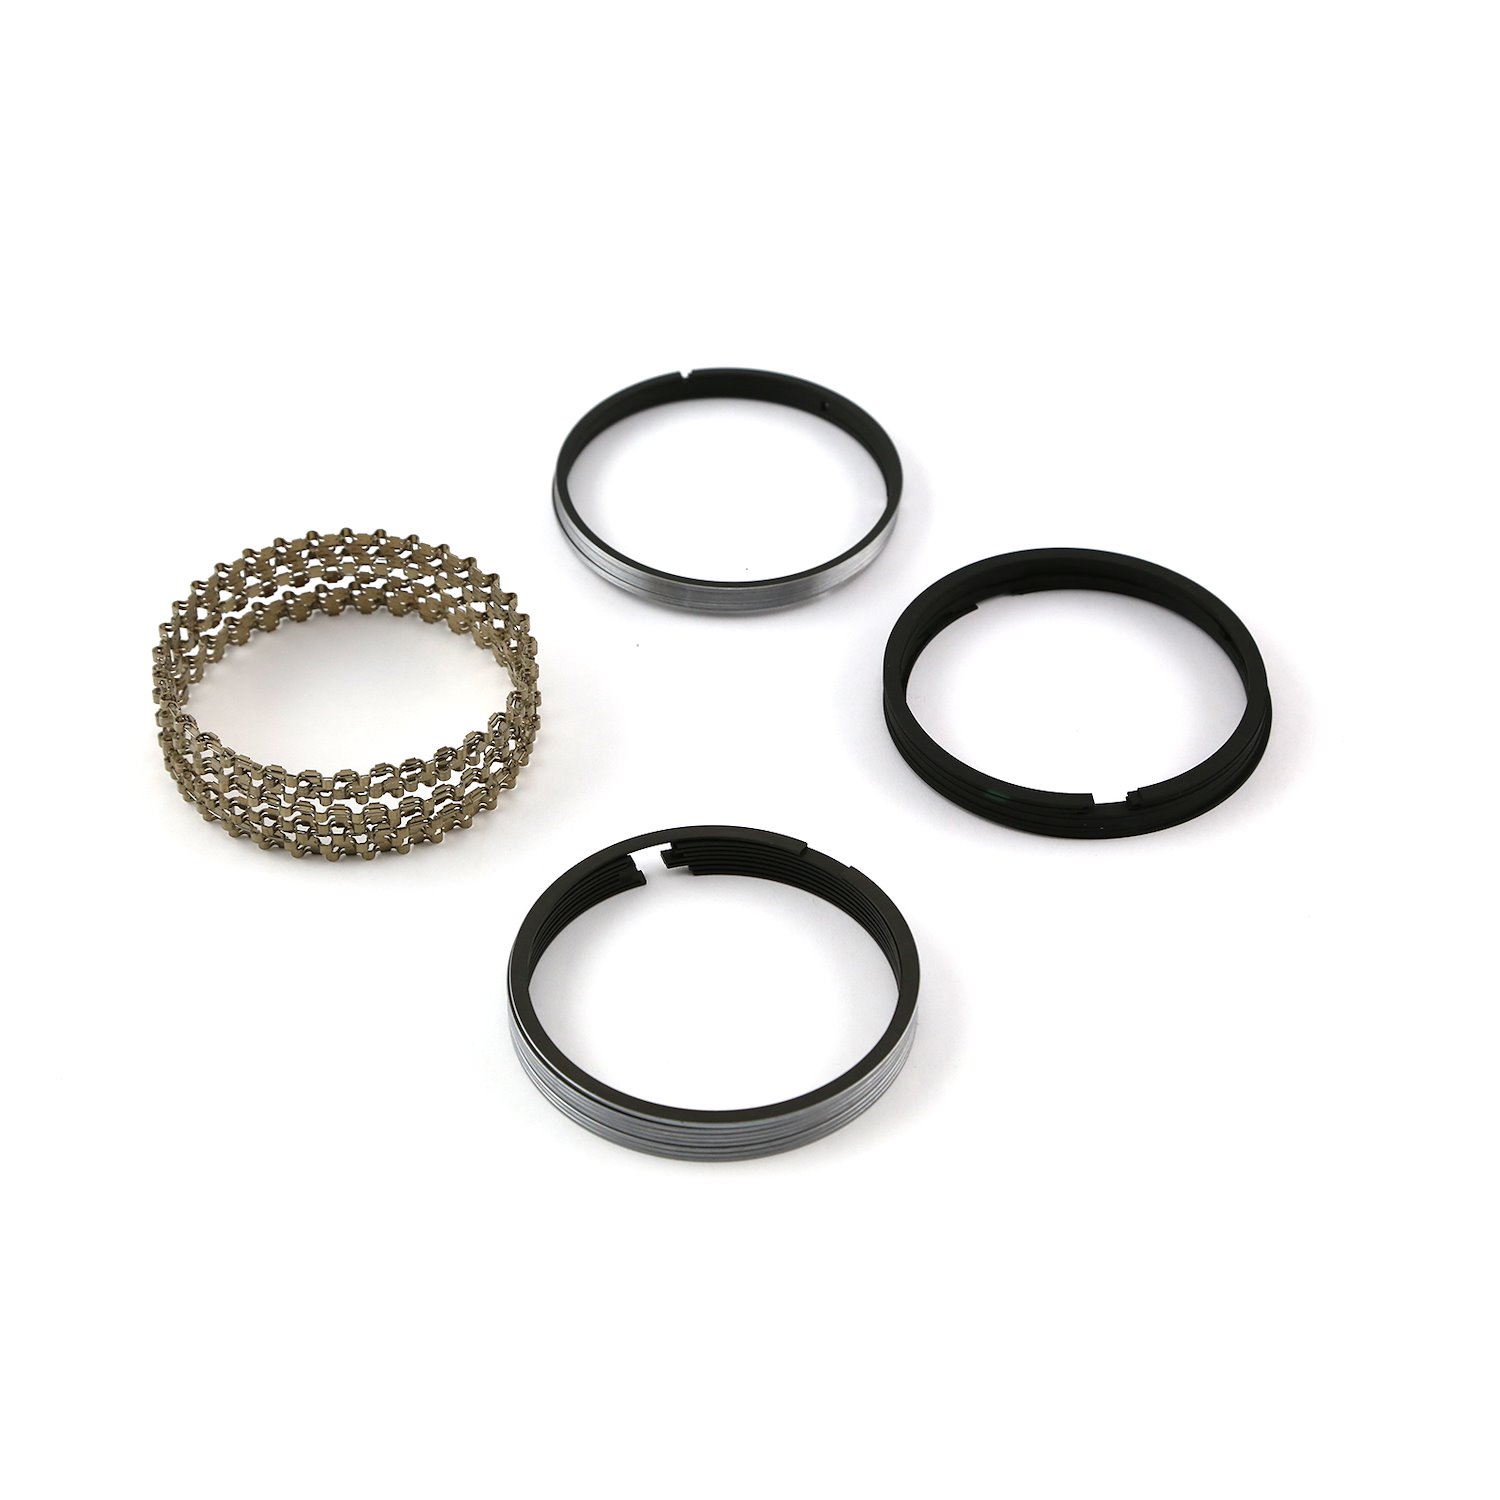 4.165 Bore - 1/16 - 1/16 - 3/16 Plasma Moly Piston Ring Set - Zero Gap